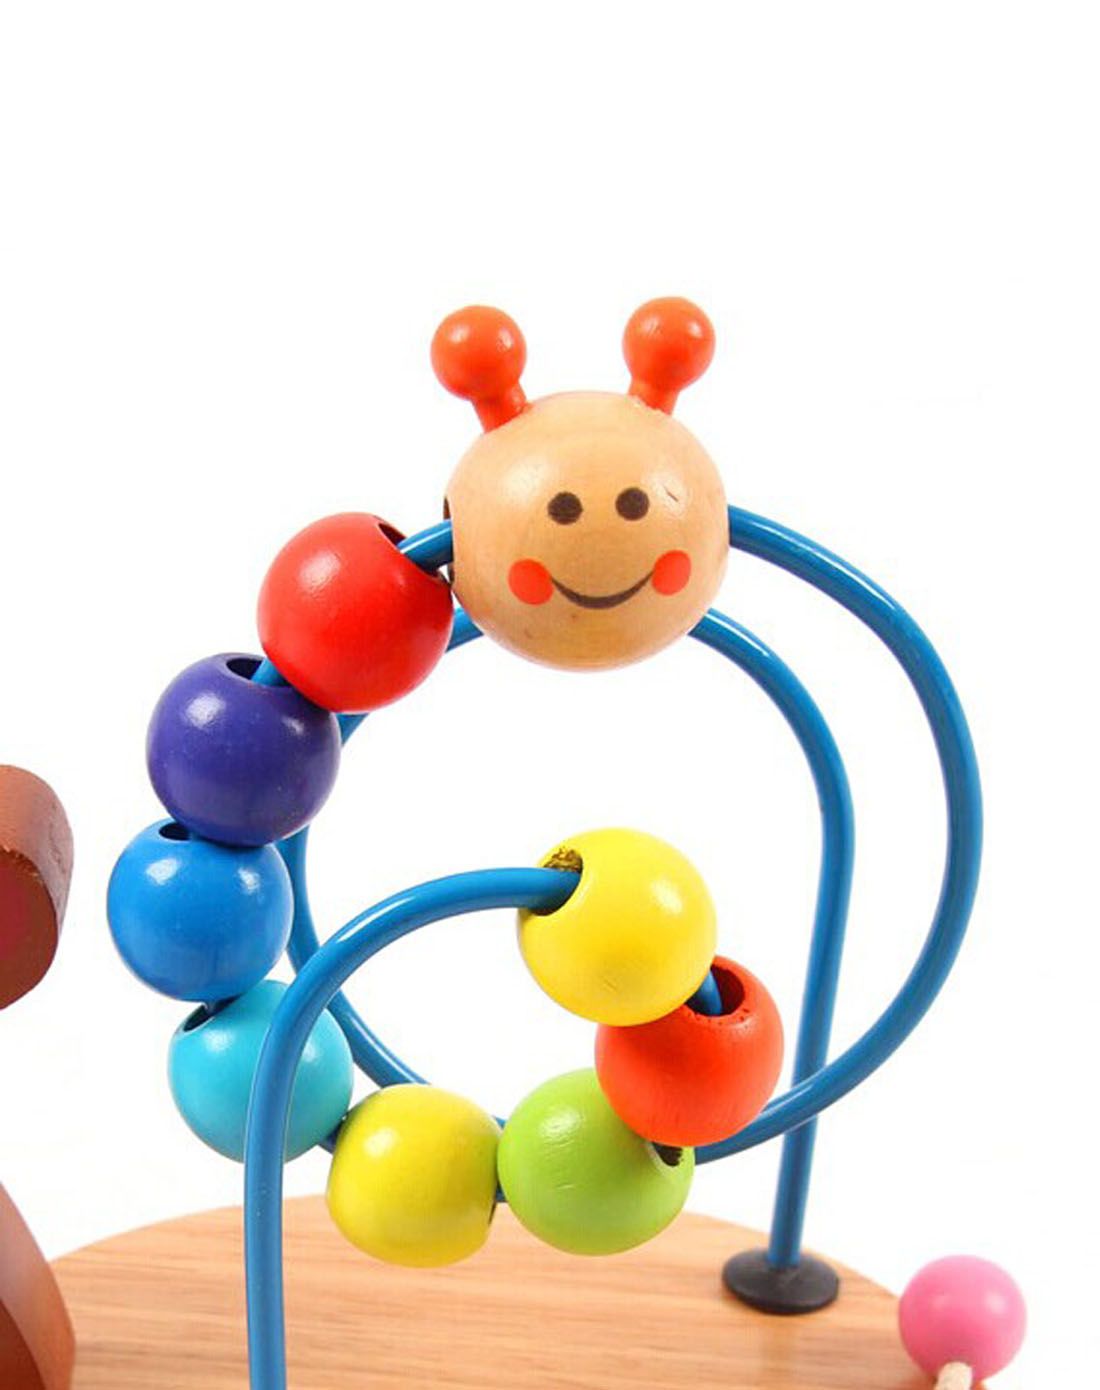 亲亲我 婴儿益智摇铃玩具 宝宝狮子王玩具0-3岁 儿童玩具_麦家美百货商城